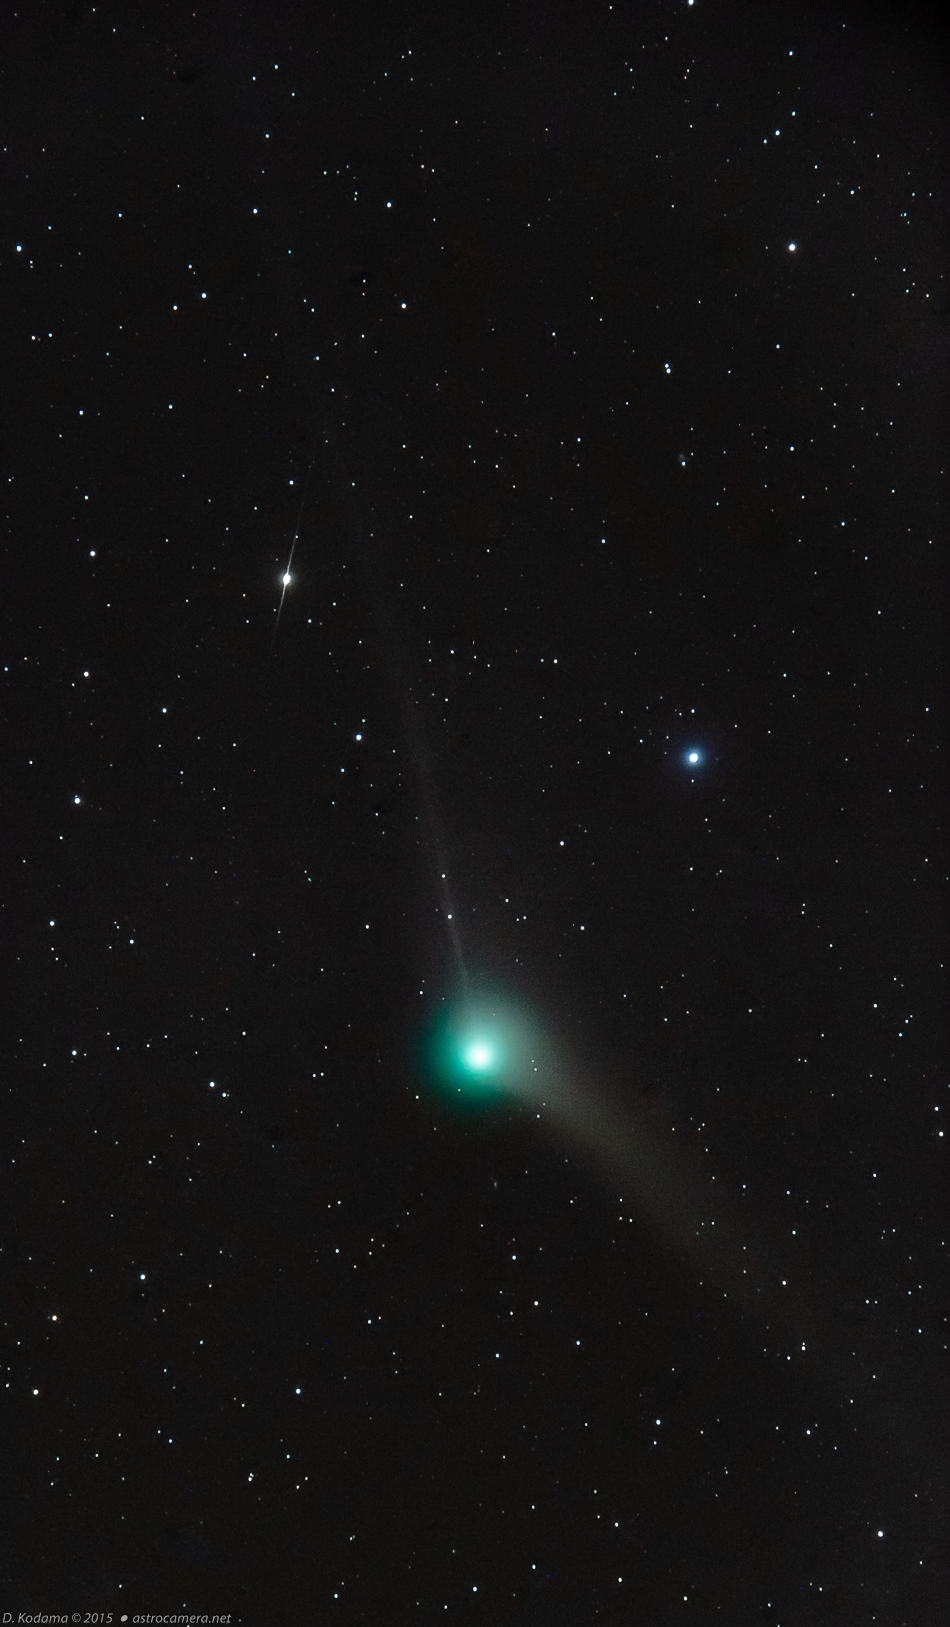 Comet Catalina